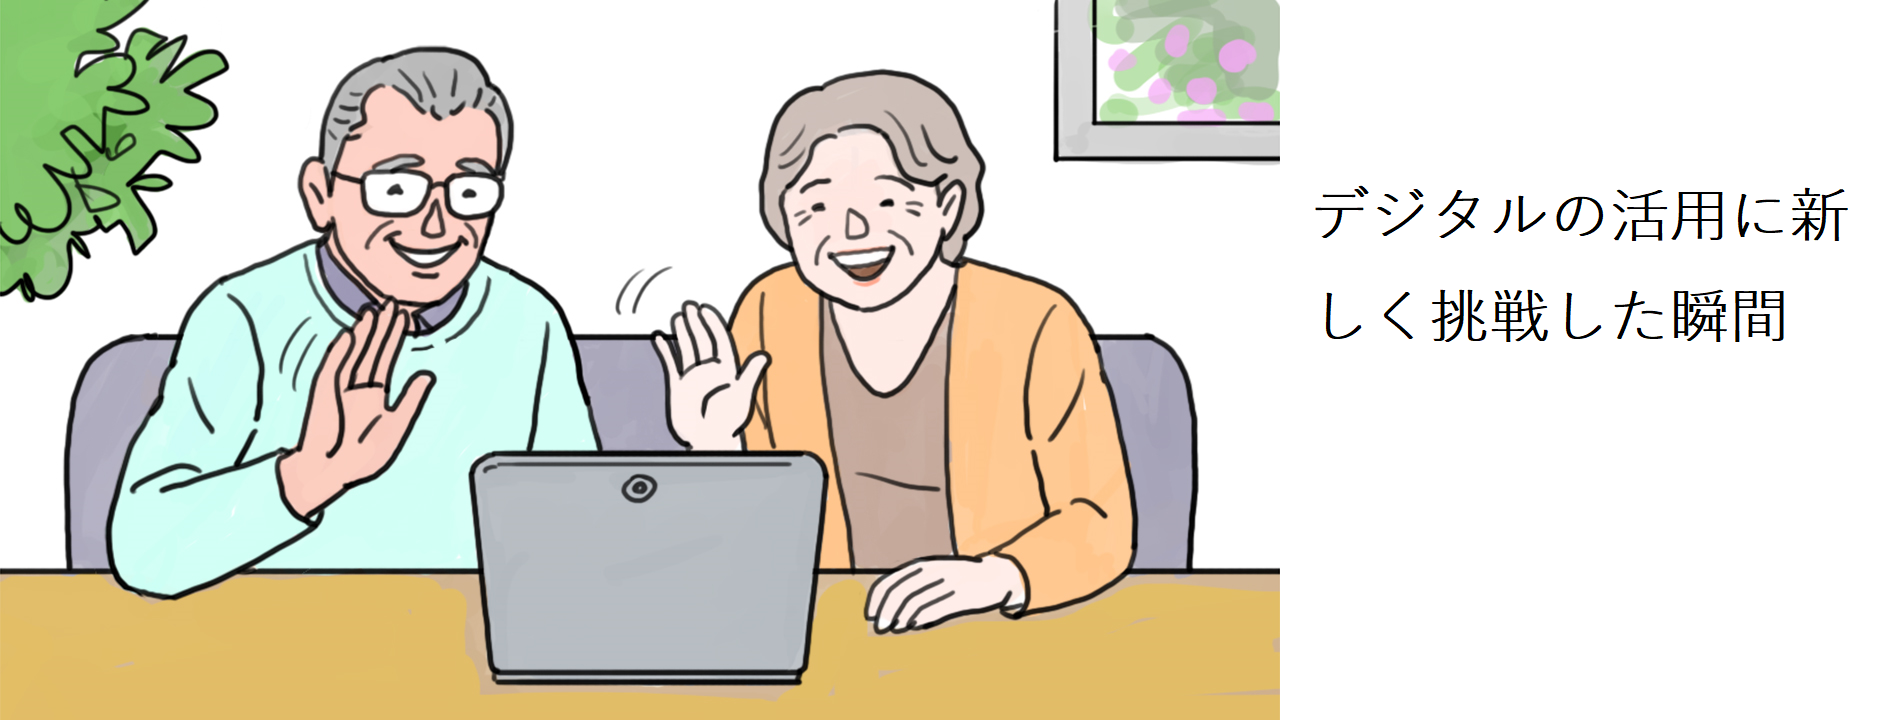 「デジタルの活用に新しく挑戦した瞬間」というキャプションが付けられたイラスト。老夫婦がテーブルに置かれたノートパソコンの前に並んで座って画面を眺めている。老婆は画面に向かって手を振っている。